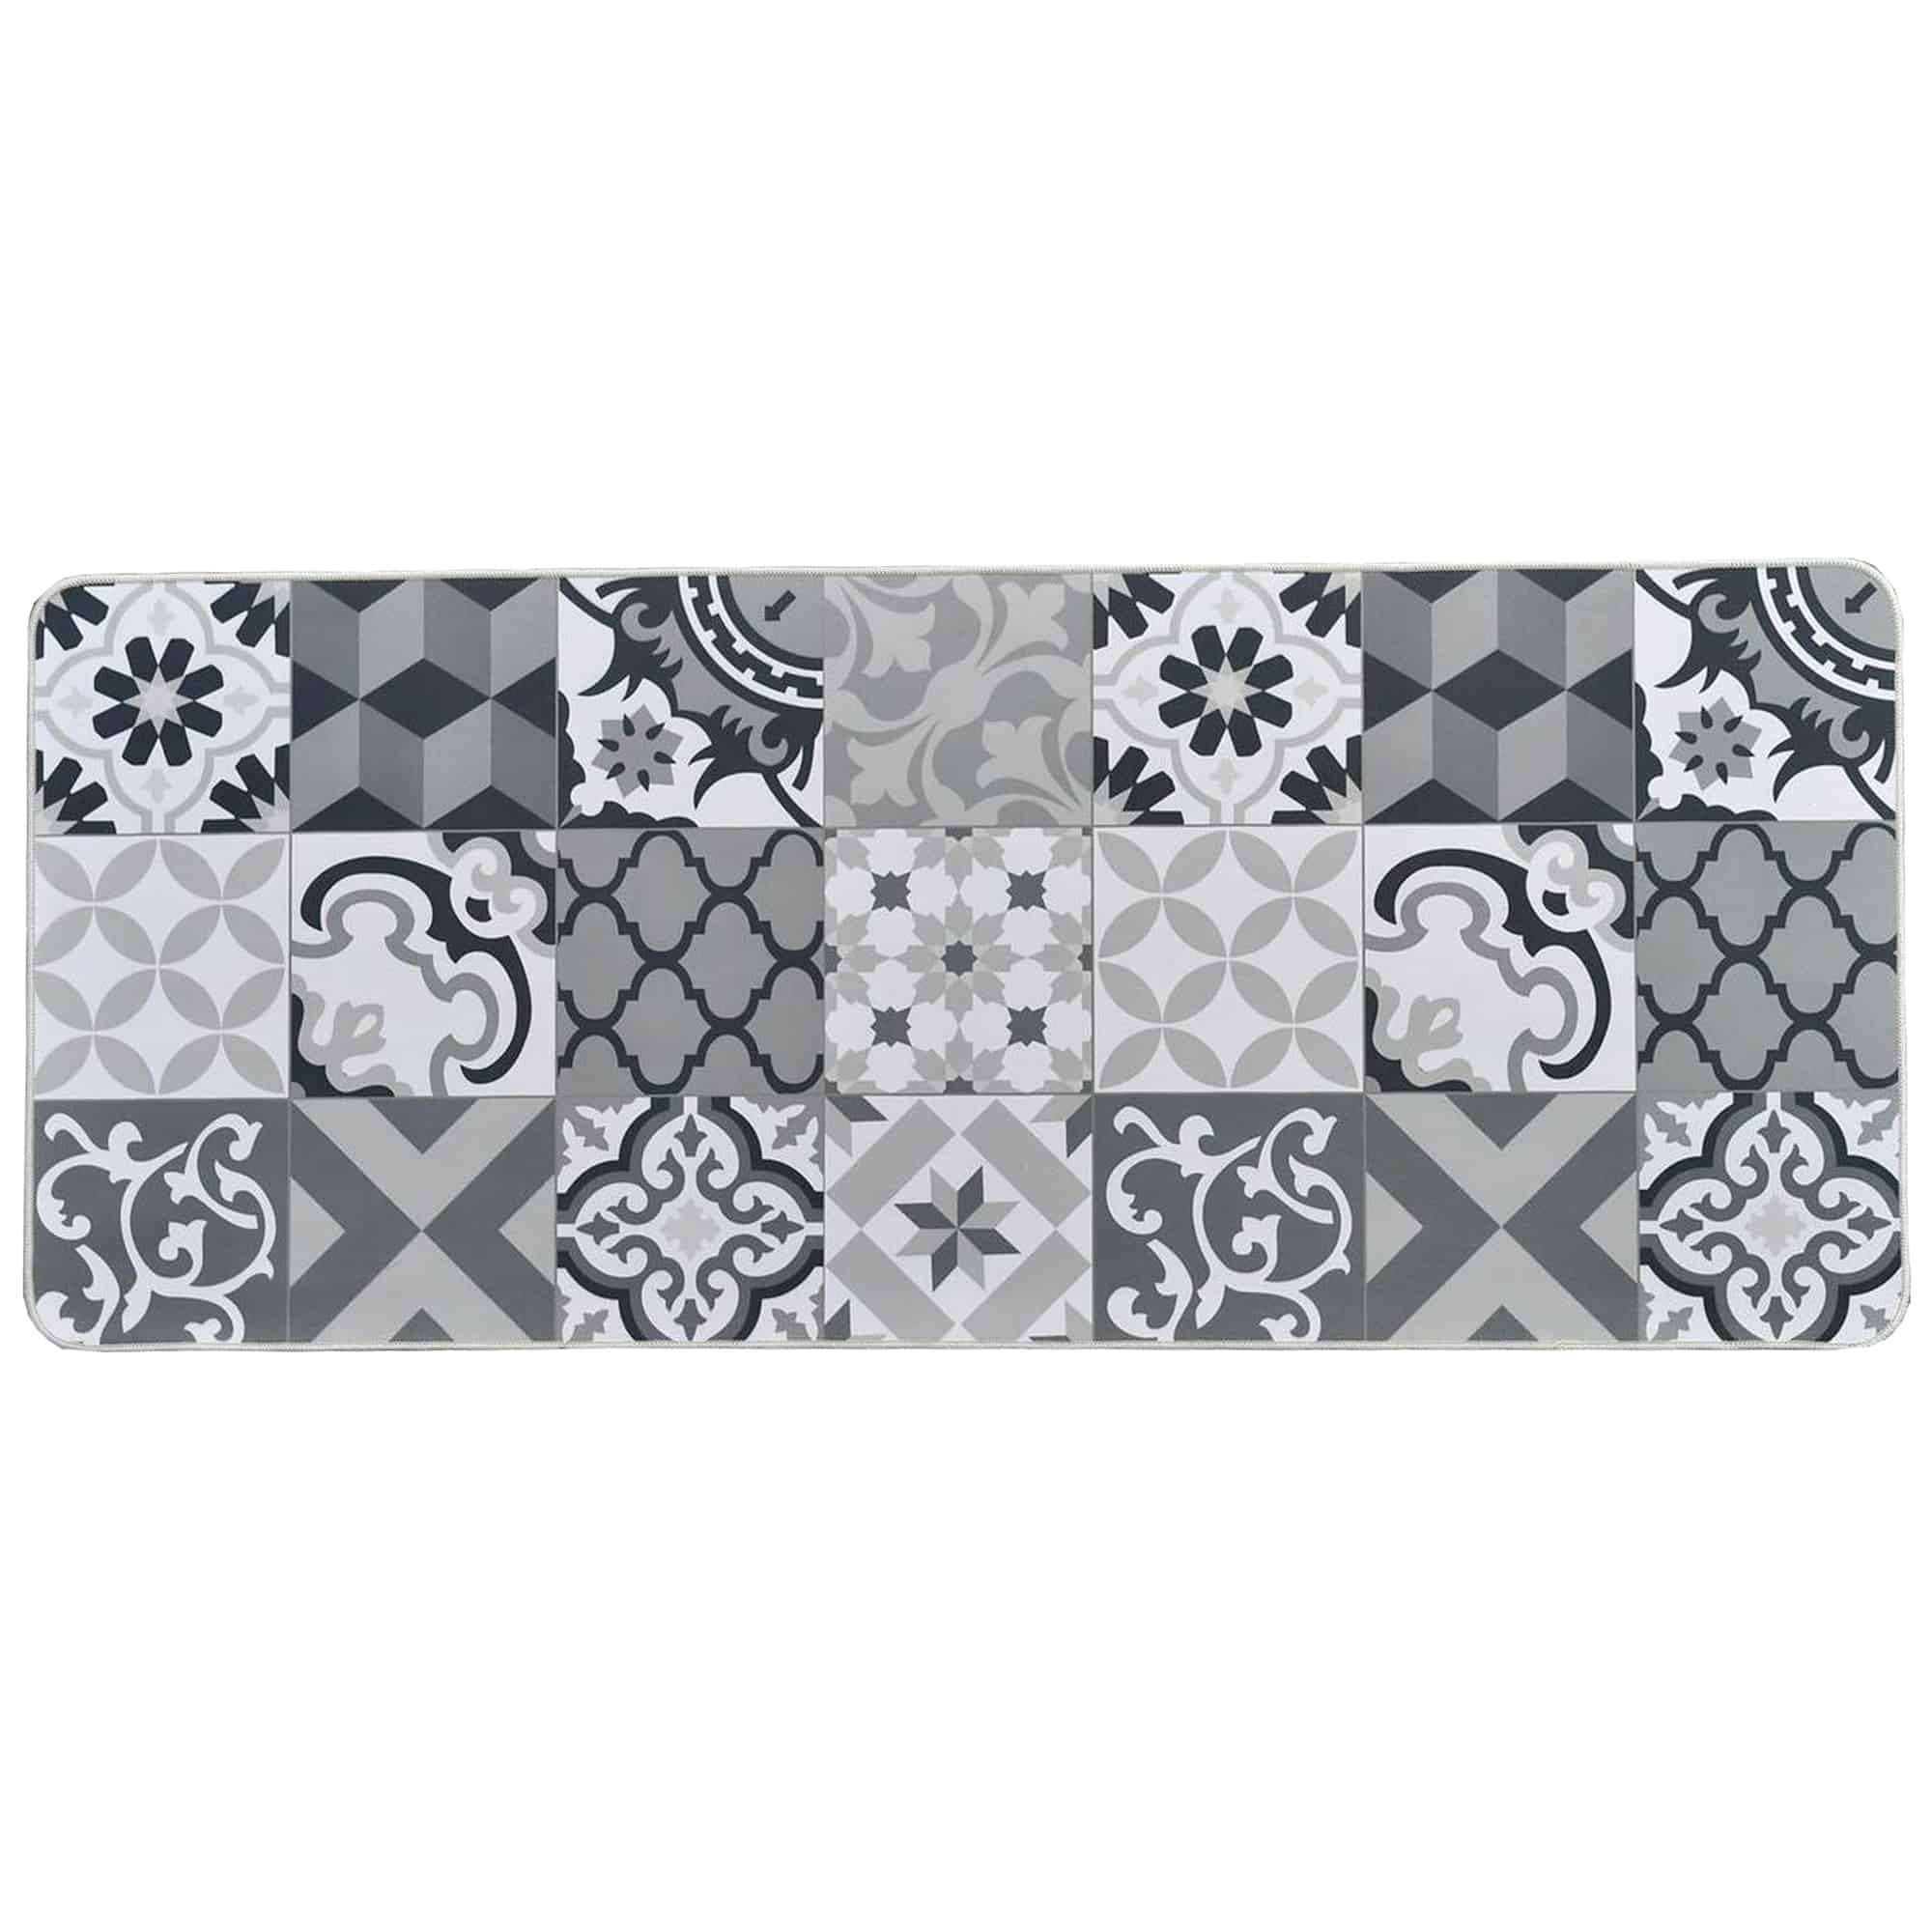 Ceramic Tile Pattern Anti Fatigue Kitchen Mat & Runner Rug Set of 2